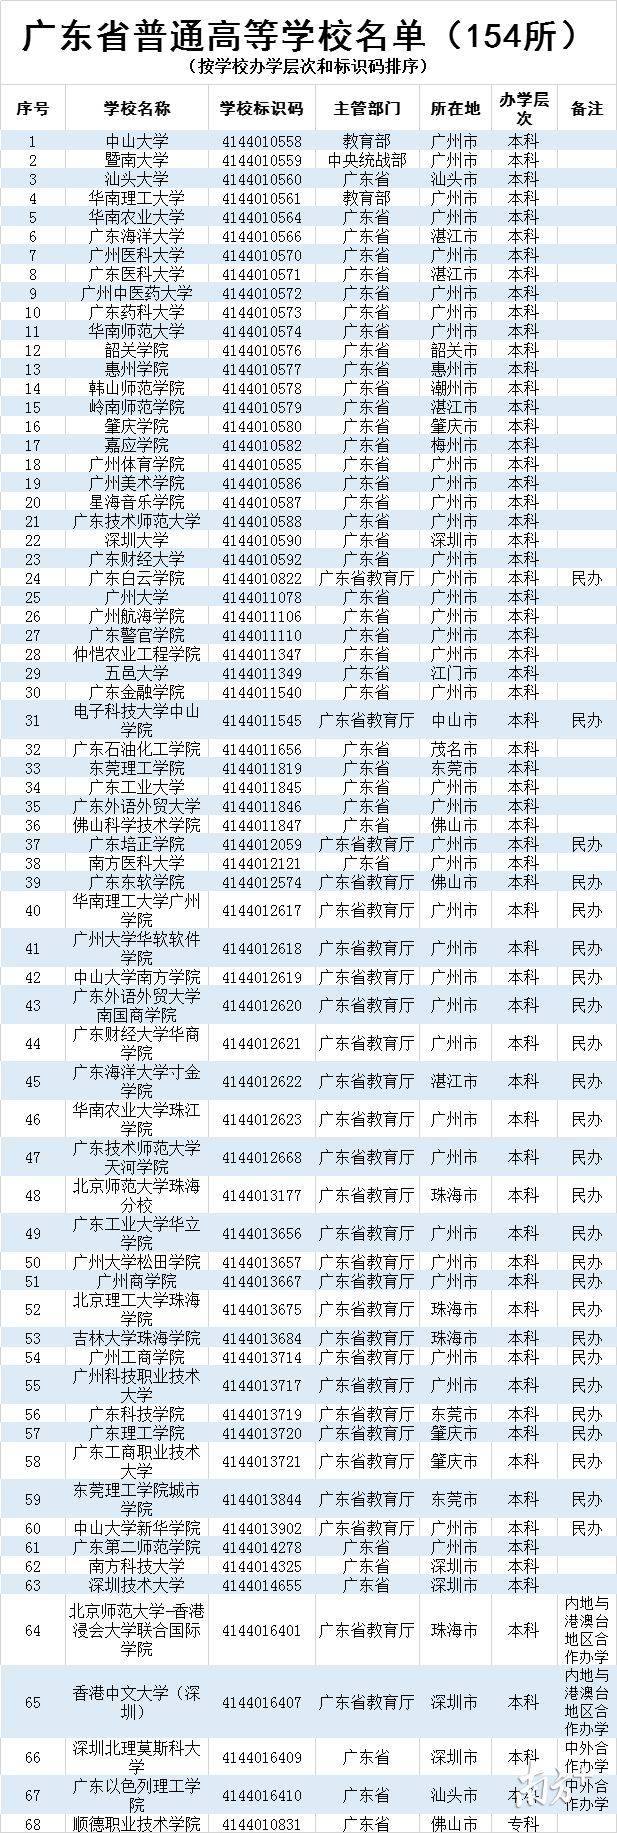 拒绝"野鸡大学"!广东154所高校最全名单,填报志愿必备